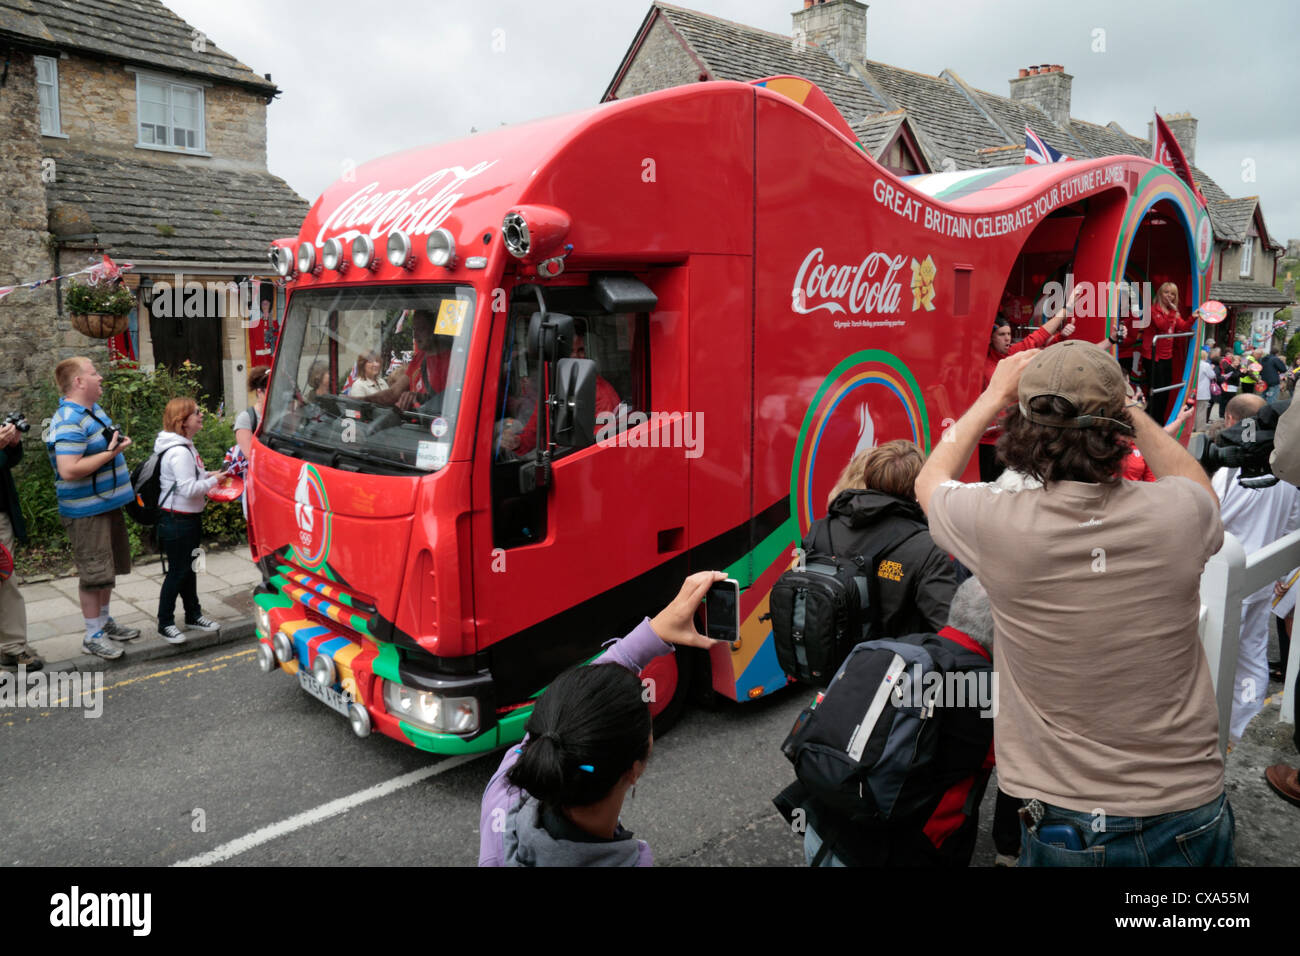 Le bus de Coca Cola, une partie de la flamme des Jeux Olympiques de 2012 à Londres, relais de la conduite dans le château de Corfe, Dorset, UK. (13 juillet 2012) Banque D'Images